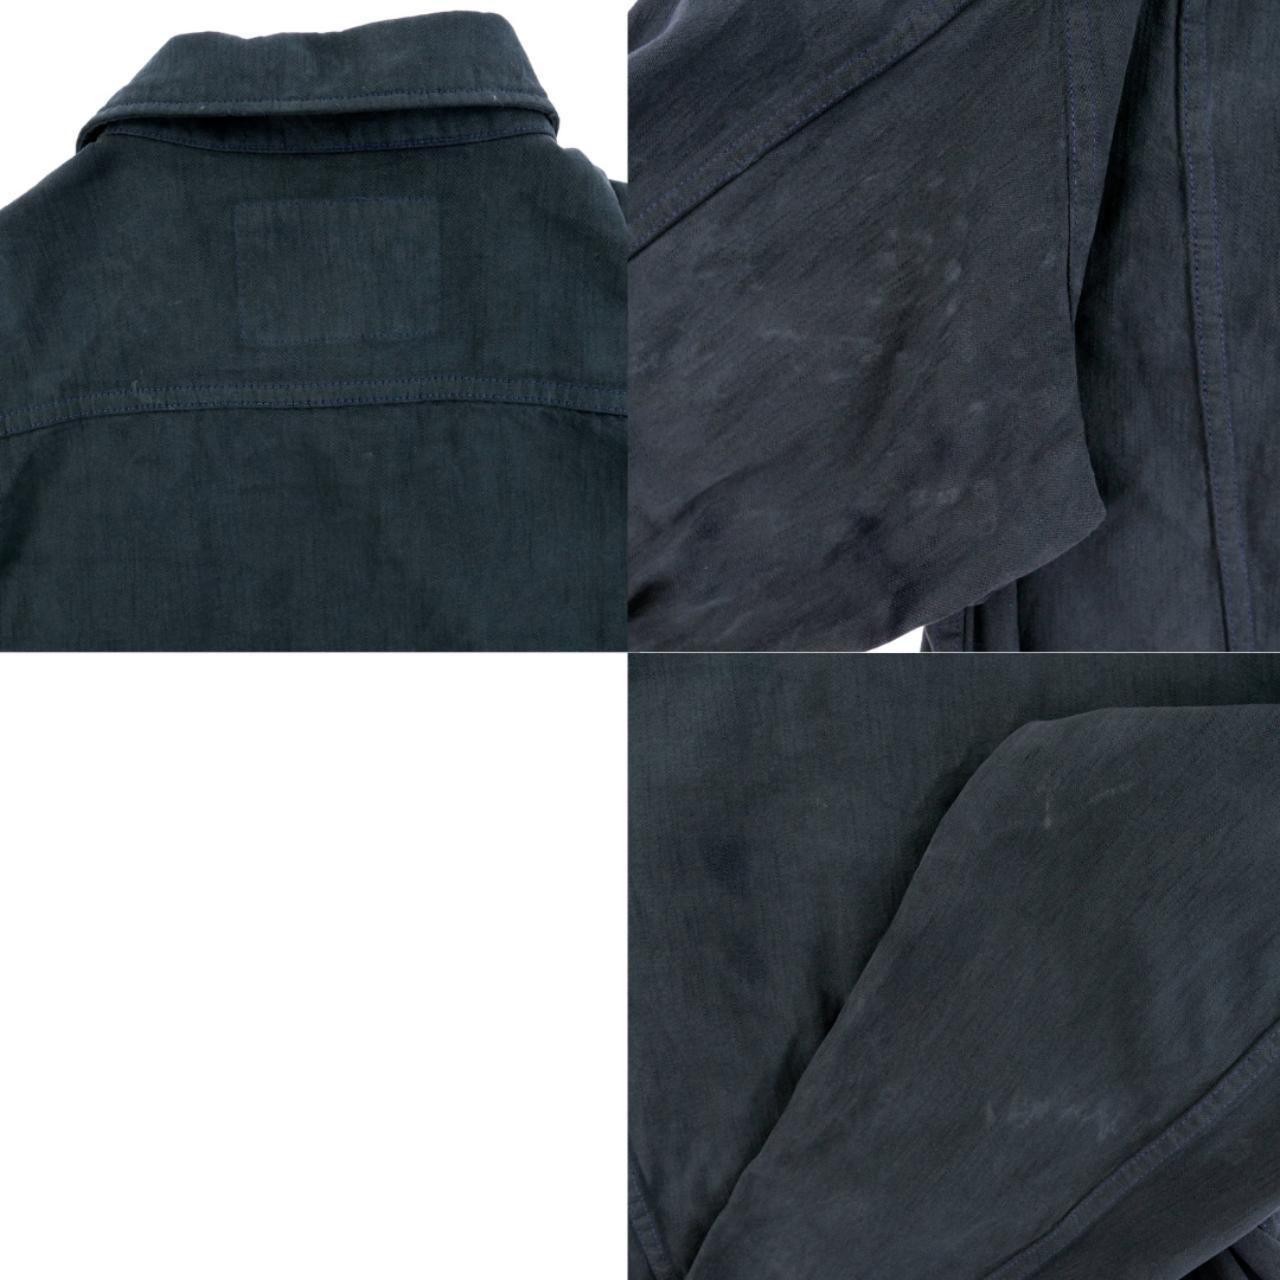 Vintage YSL Yves Saint Laurent Denim Jacket Size L - Known Source